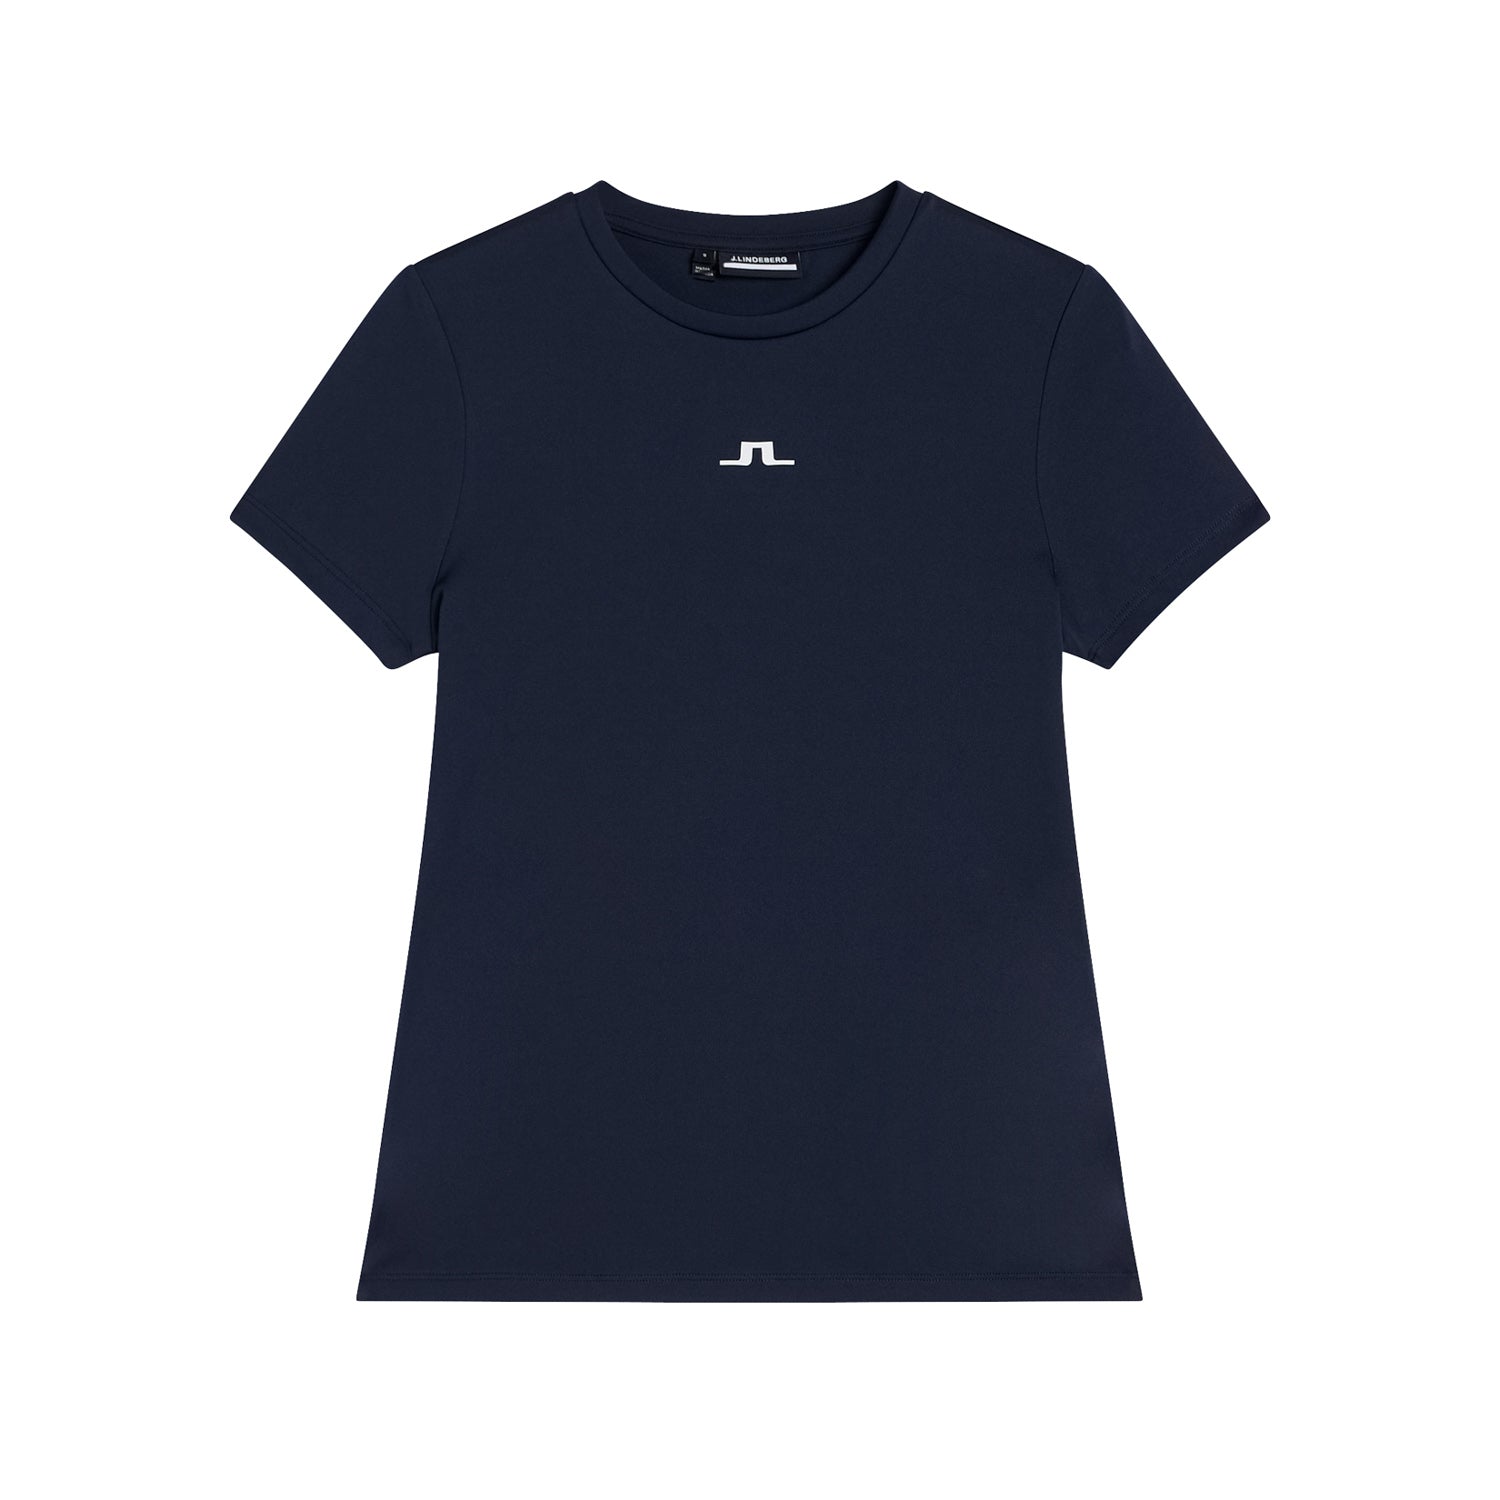 Navy blue Ada t-shirt